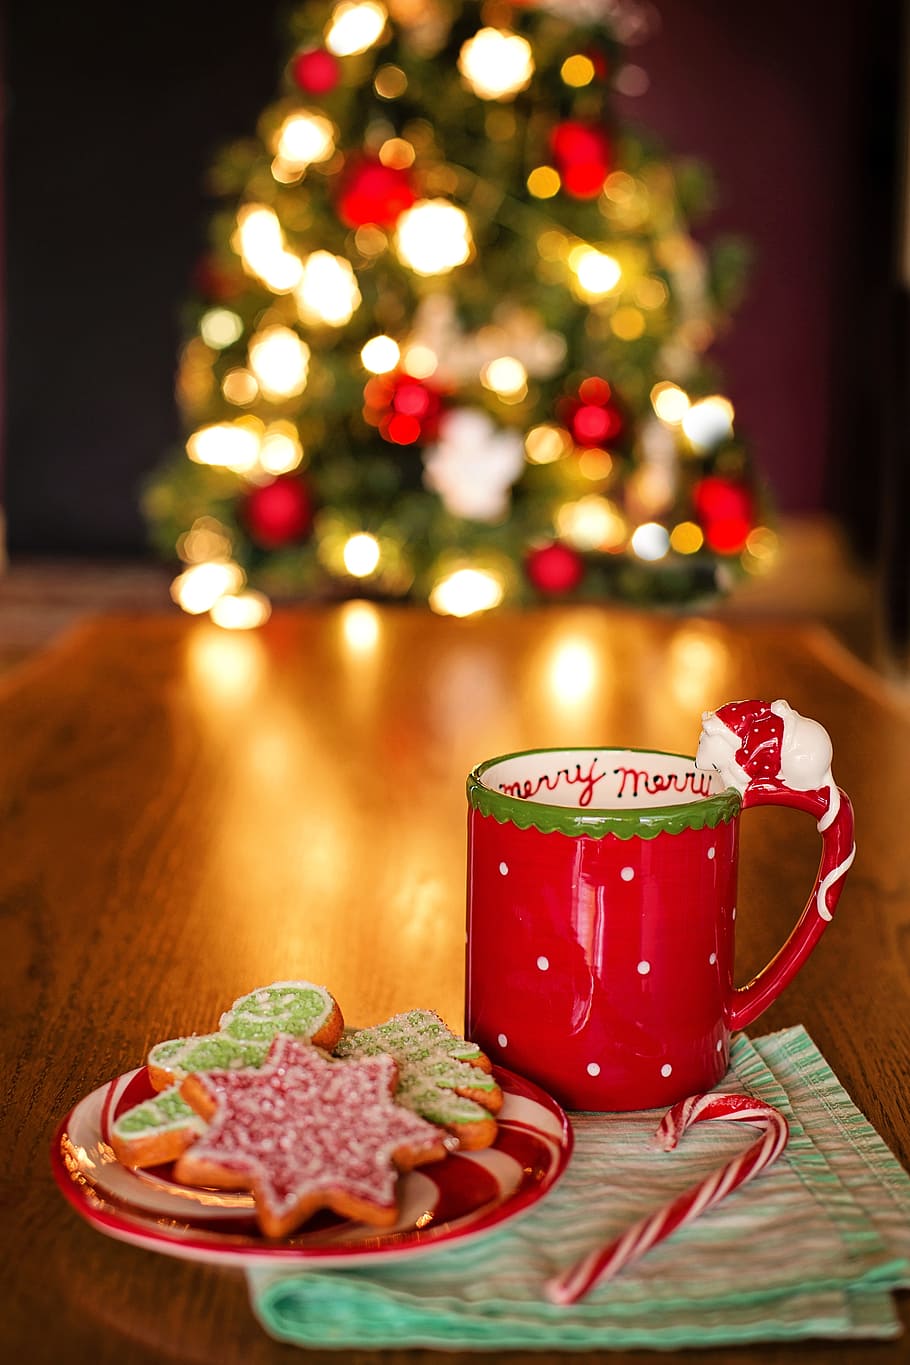 rojo, cerámico, taza, al lado, galletas, platillo, navidad, bodegón, árbol, chocolate caliente